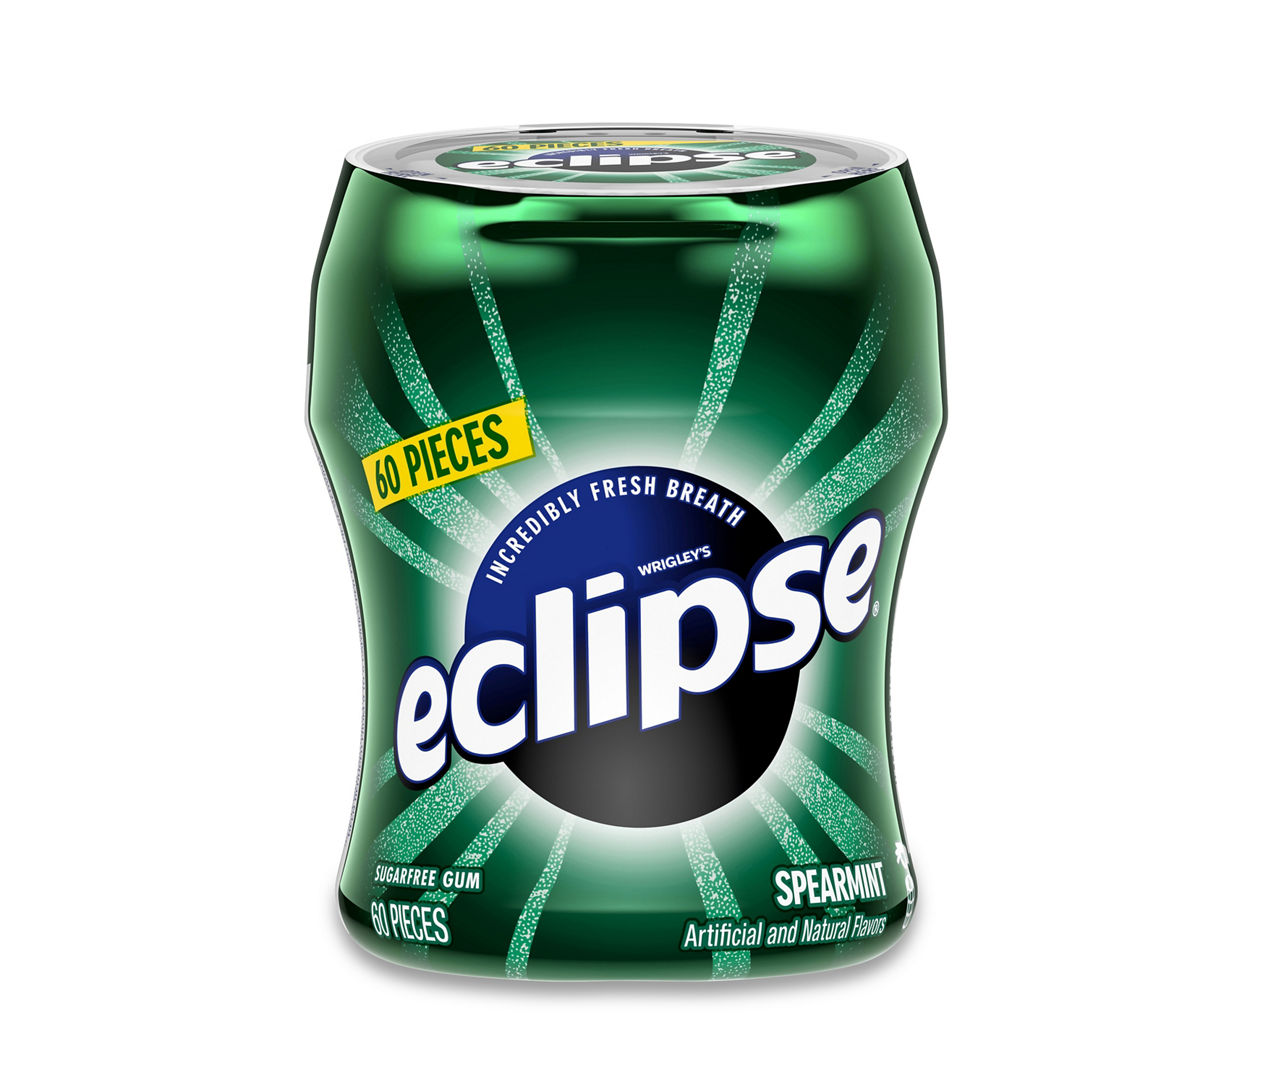 eclipse gum logo